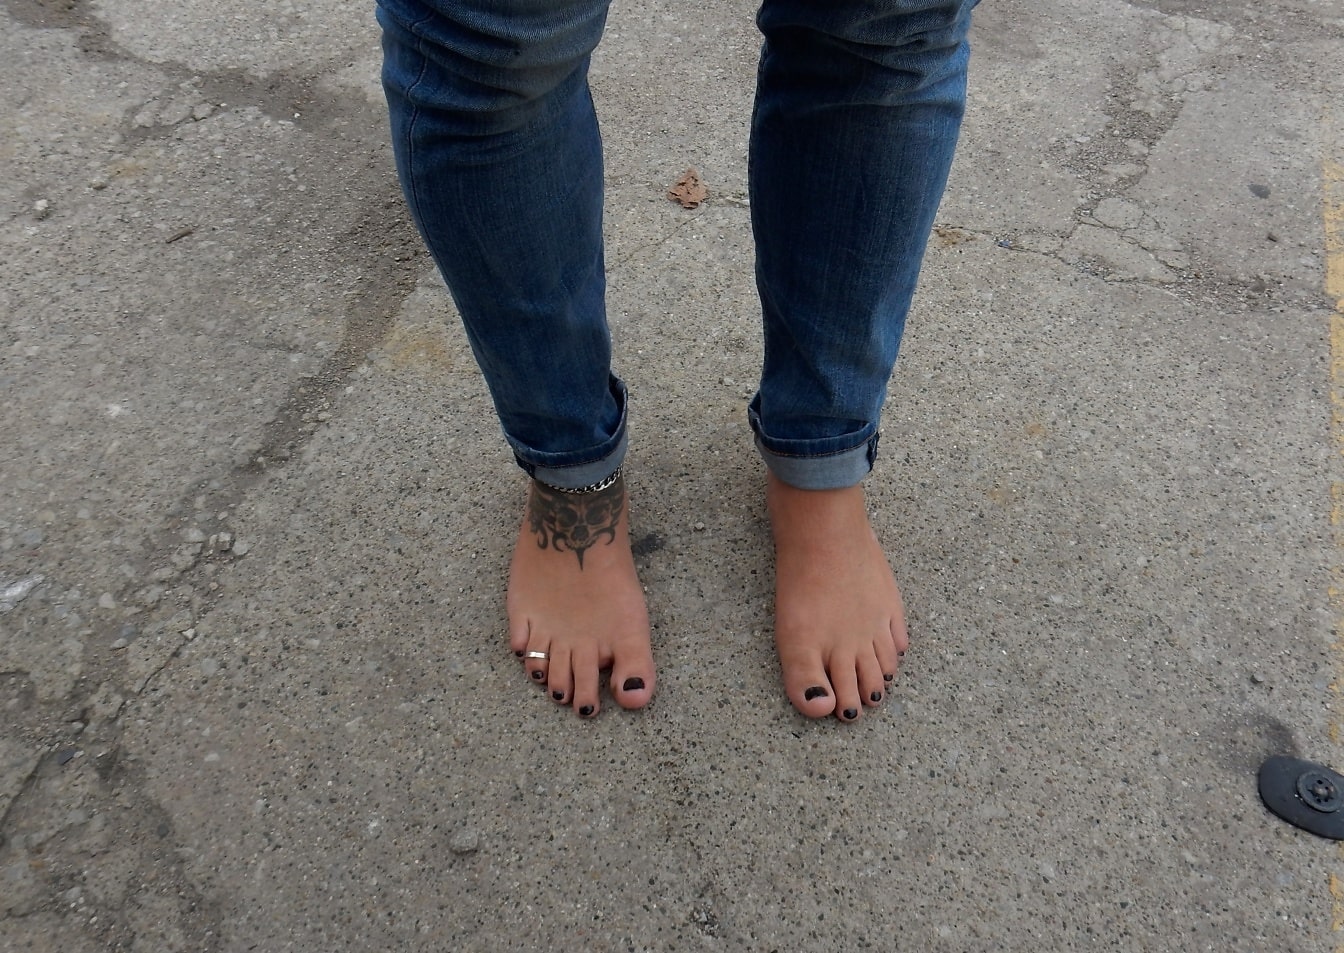 Mezítlábas férfi sötétkék farmerben, fekete körömlakkot visel a lábujjain